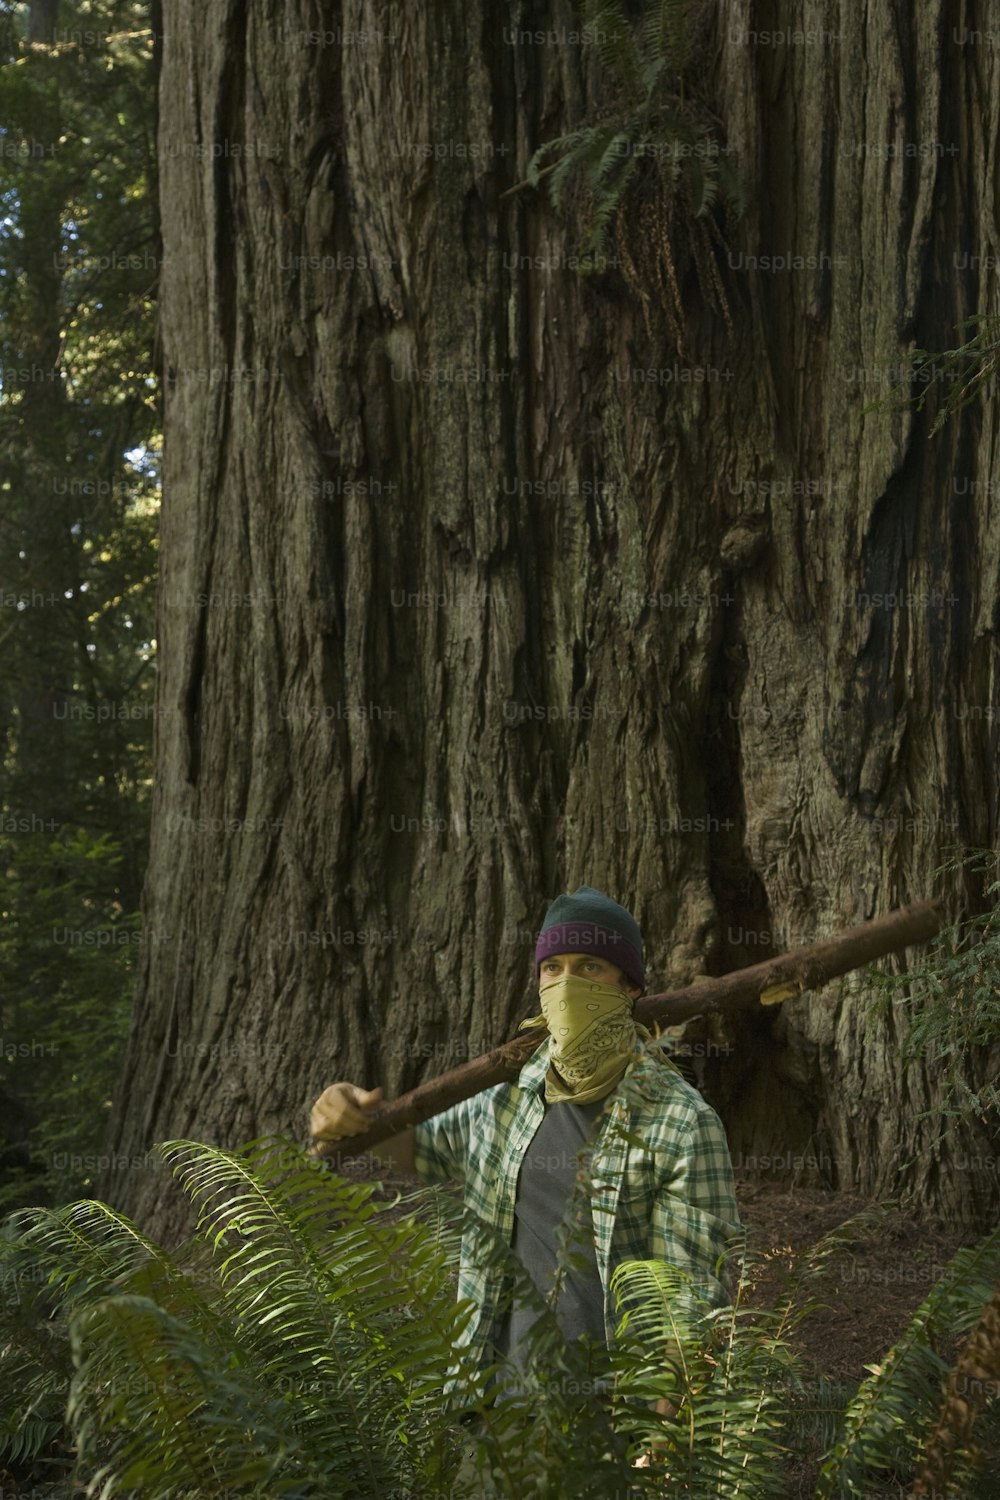 格子縞のシャツと緑の格子縞の帽子をかぶった男が前に立っている